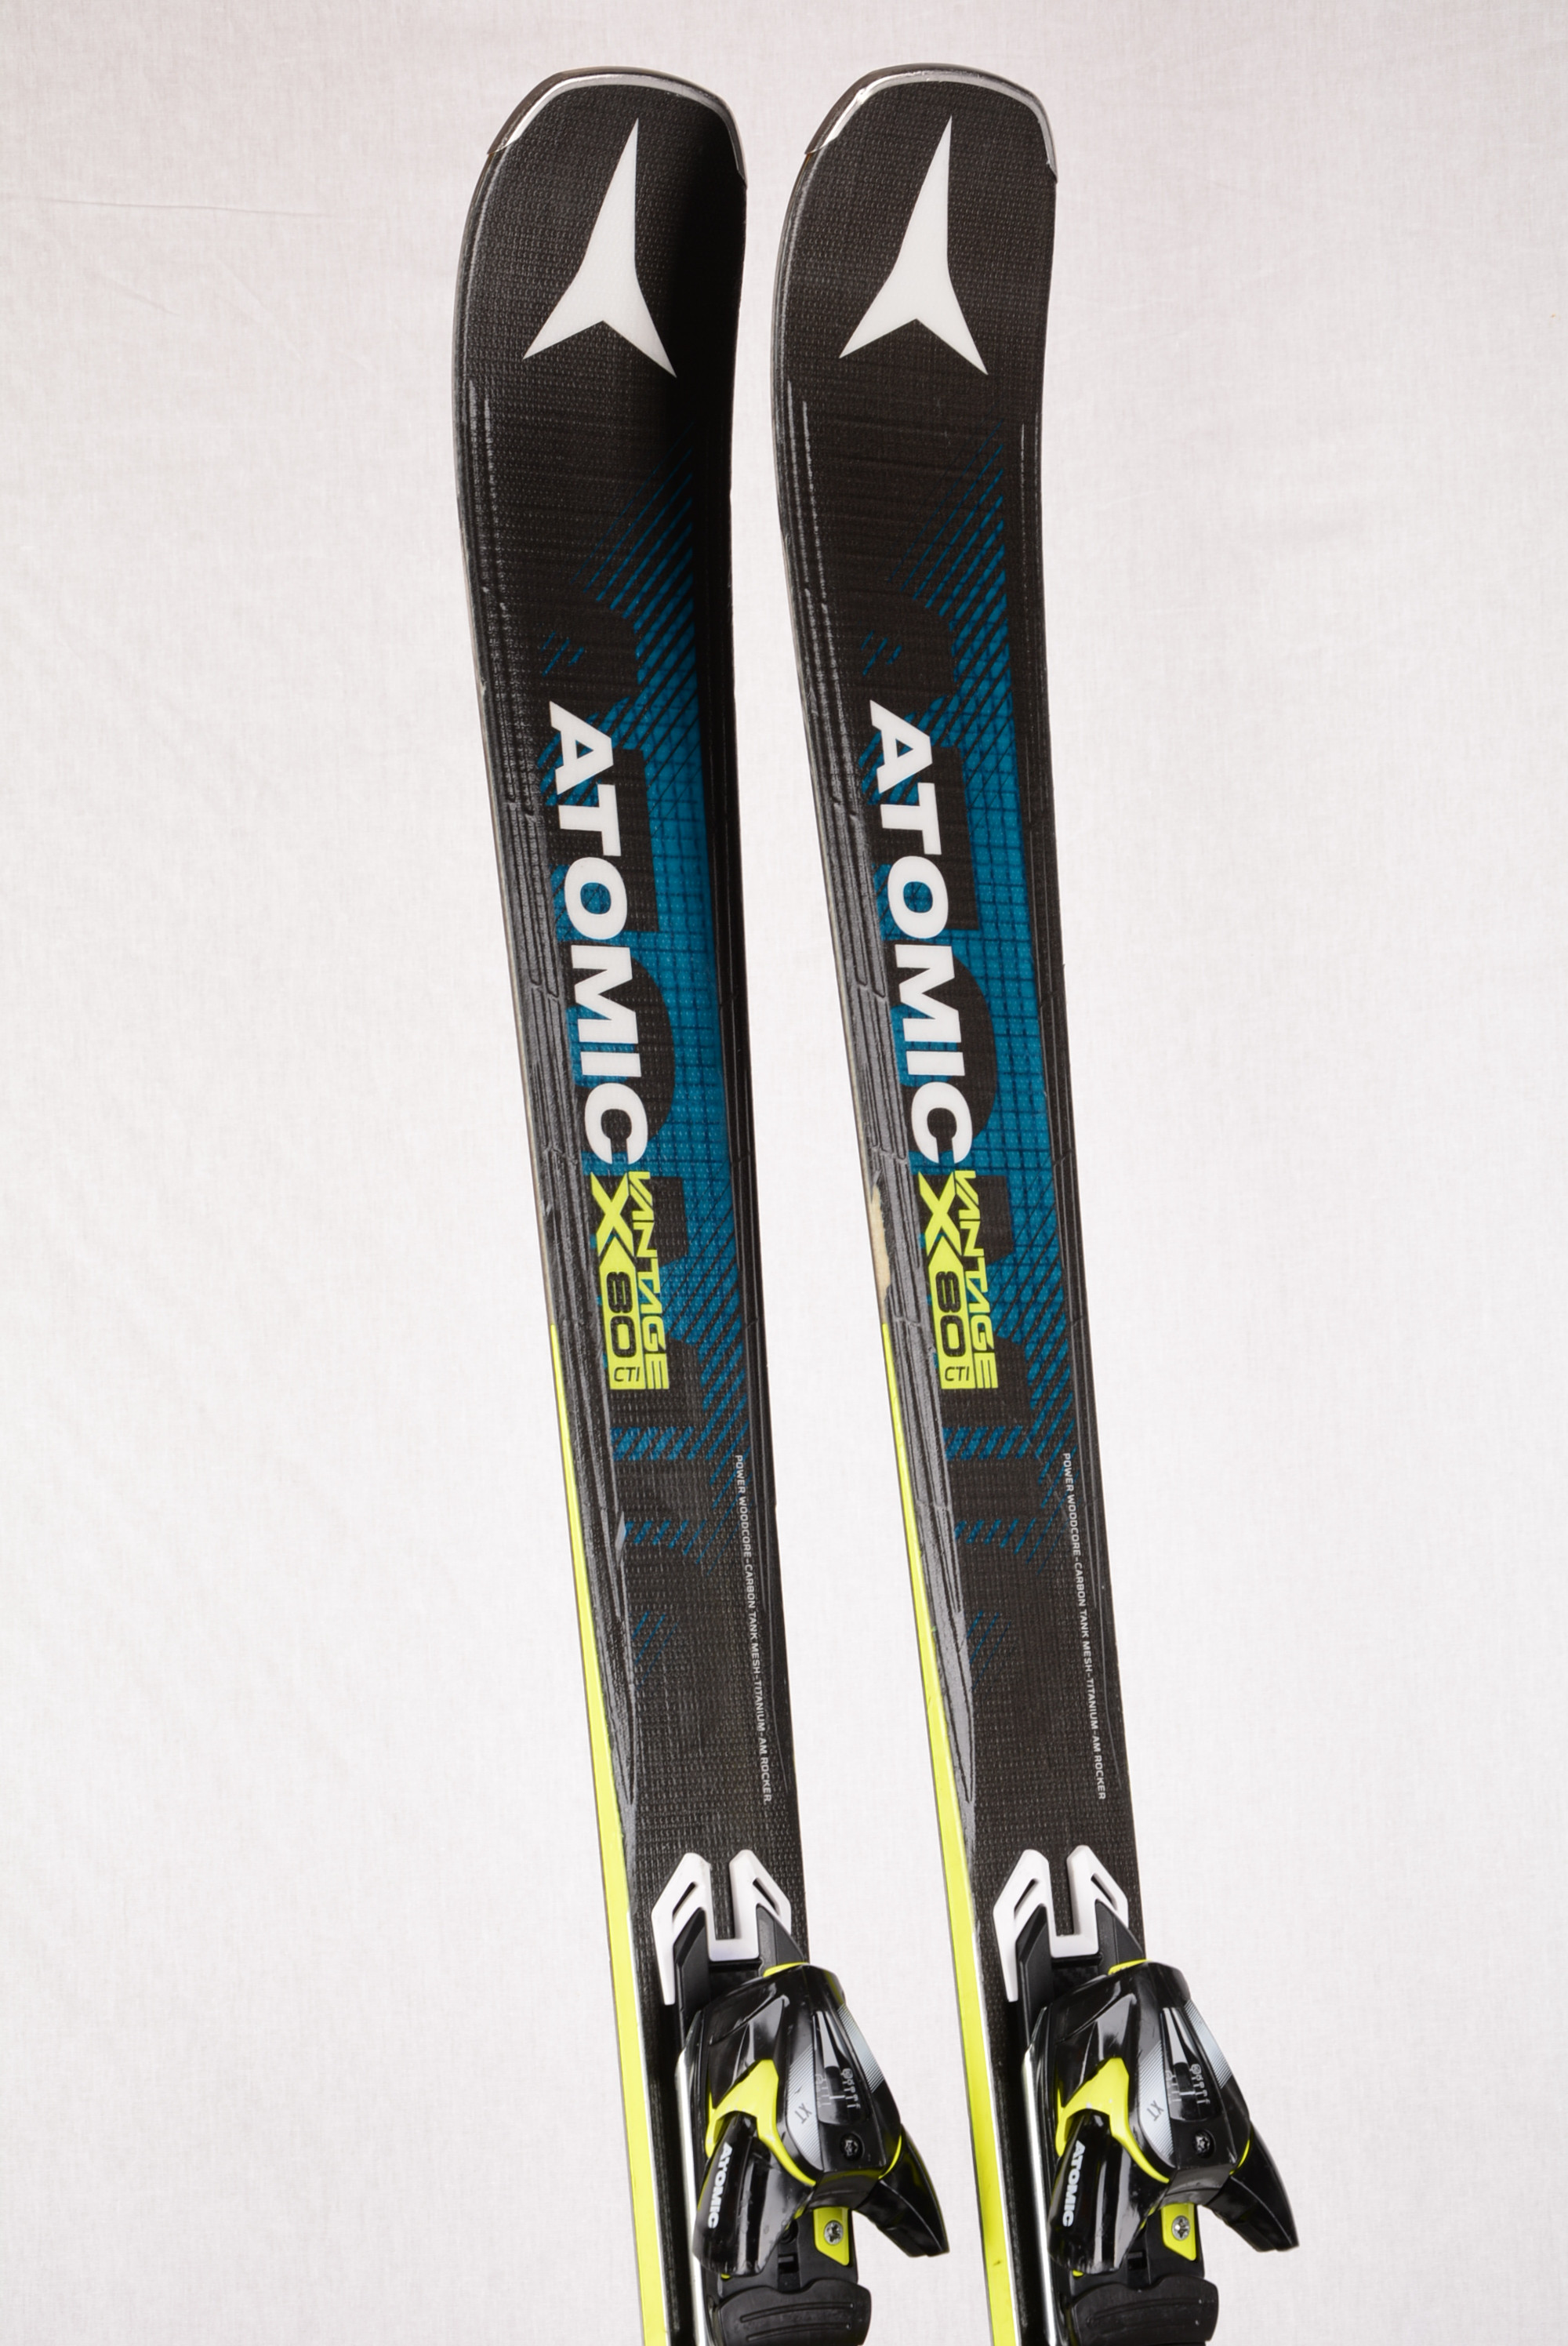 esquís ATOMIC VANTAGE X 80 Cti, Woodcore, CARBON, TITANIUM, AM 